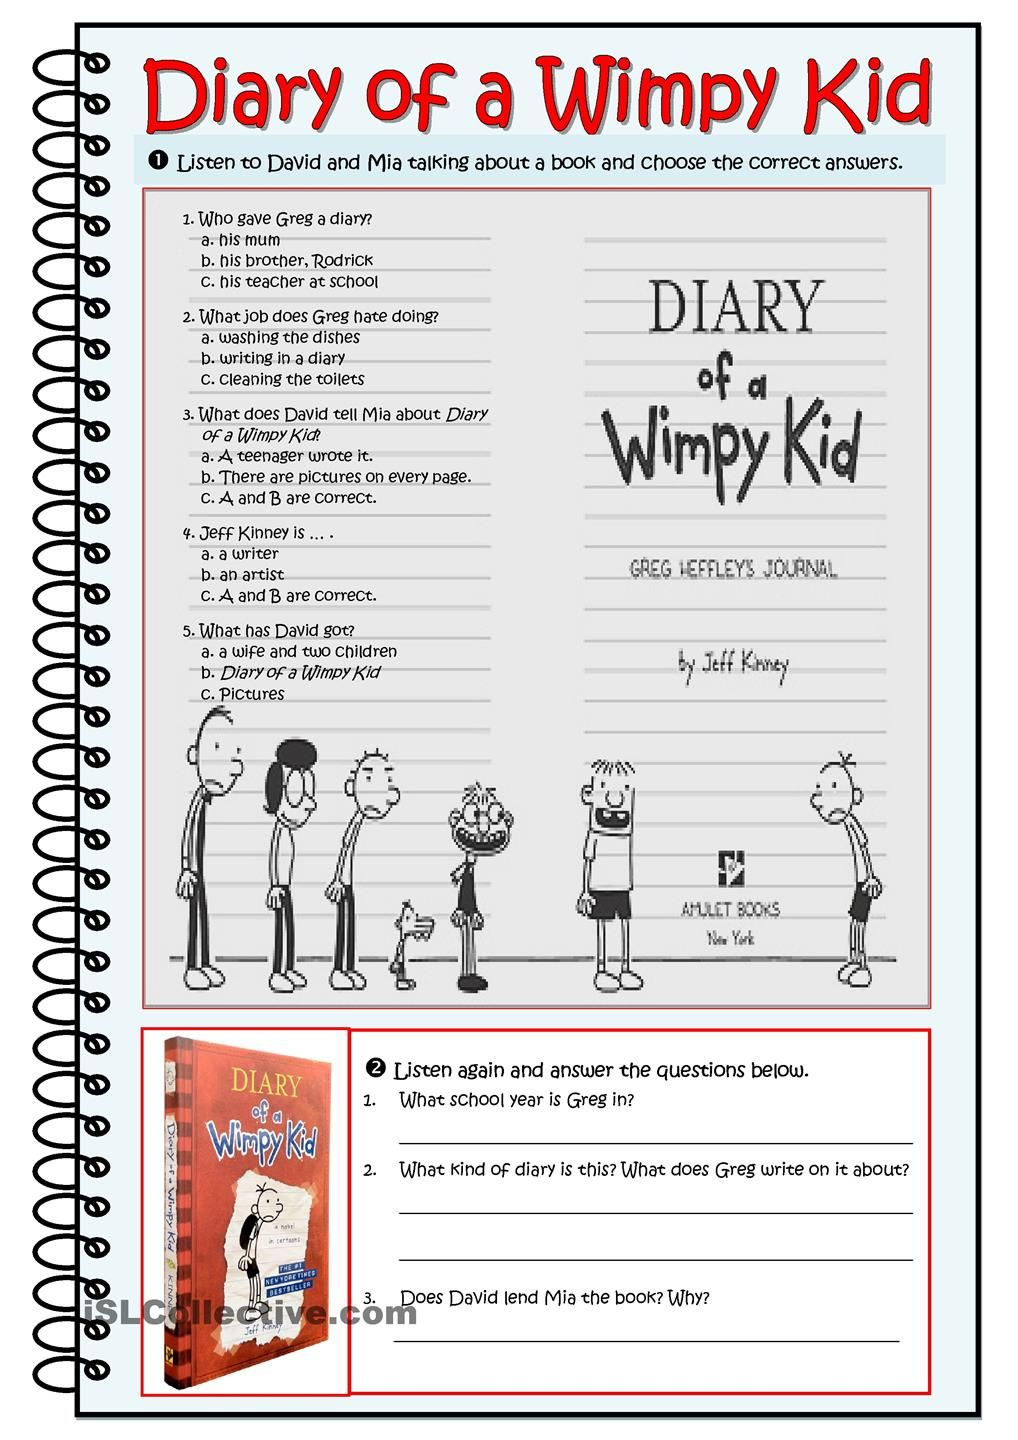 DIARY OF A WIMPY KID Wimpy Kid Kids Diary Wimpy Kid Books